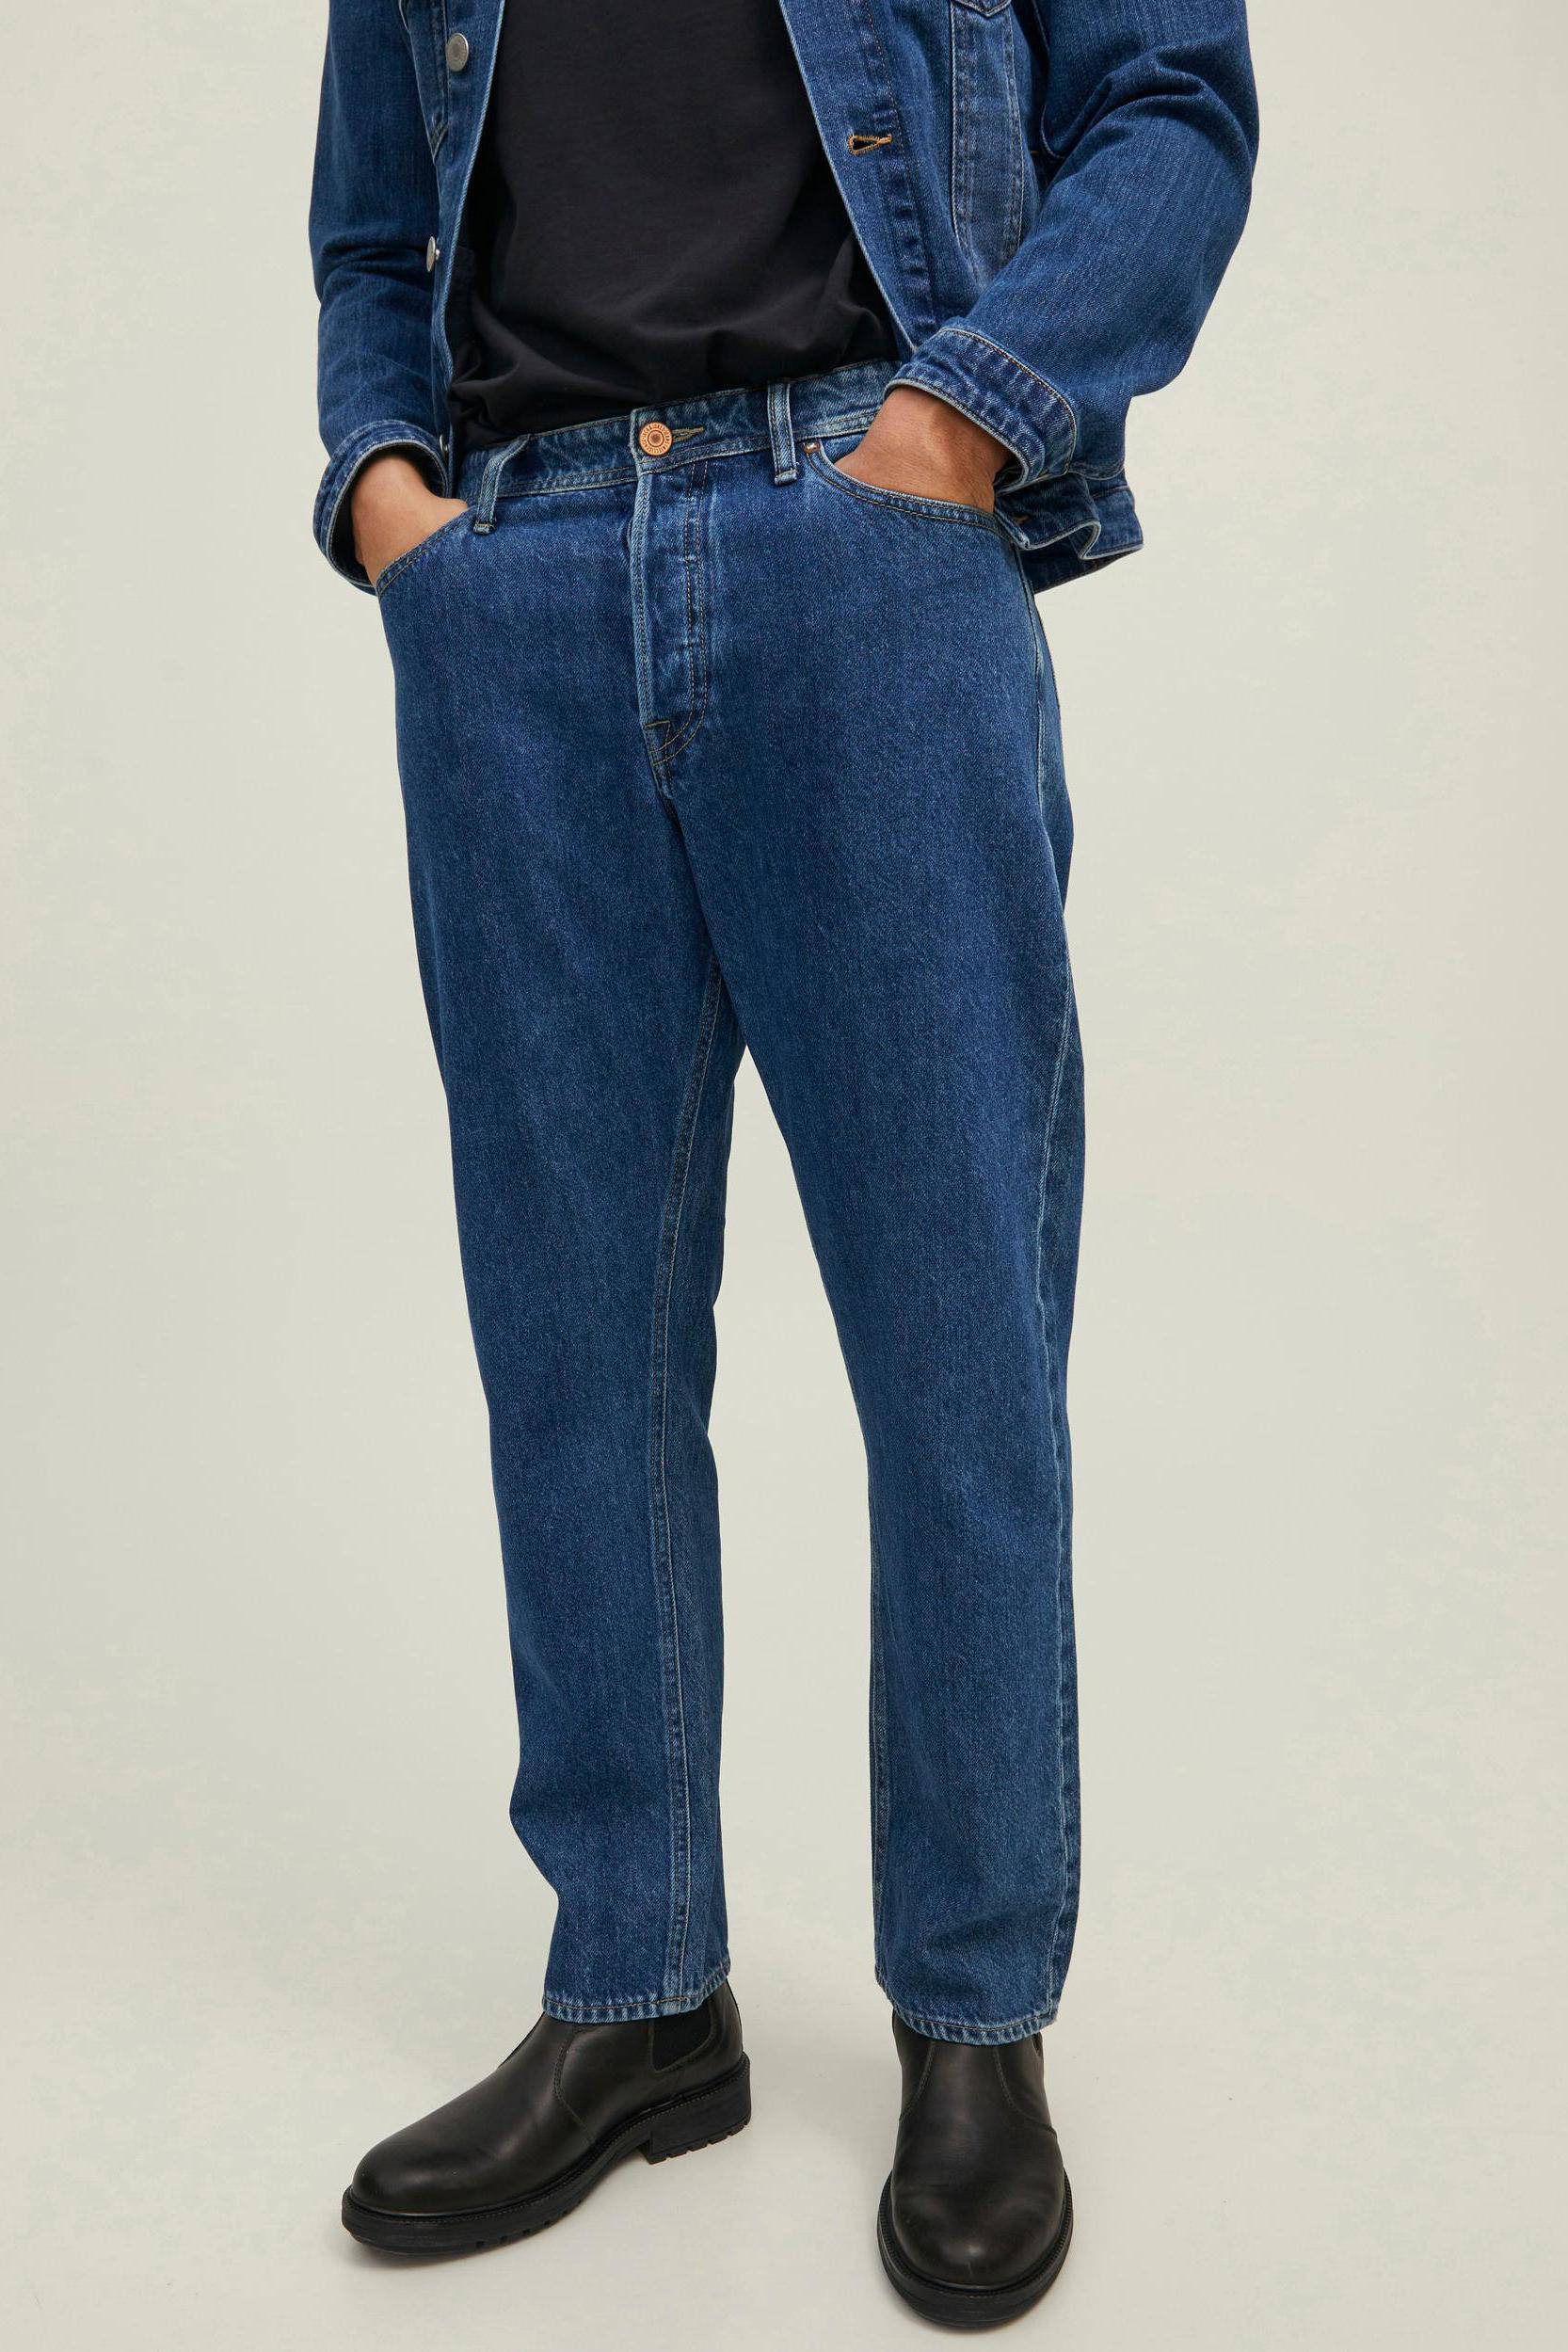 Springfield Basishemd Met Structuur in het Blauw voor heren Heren Kleding voor voor Jeans voor Relaxed en loose fit jeans 